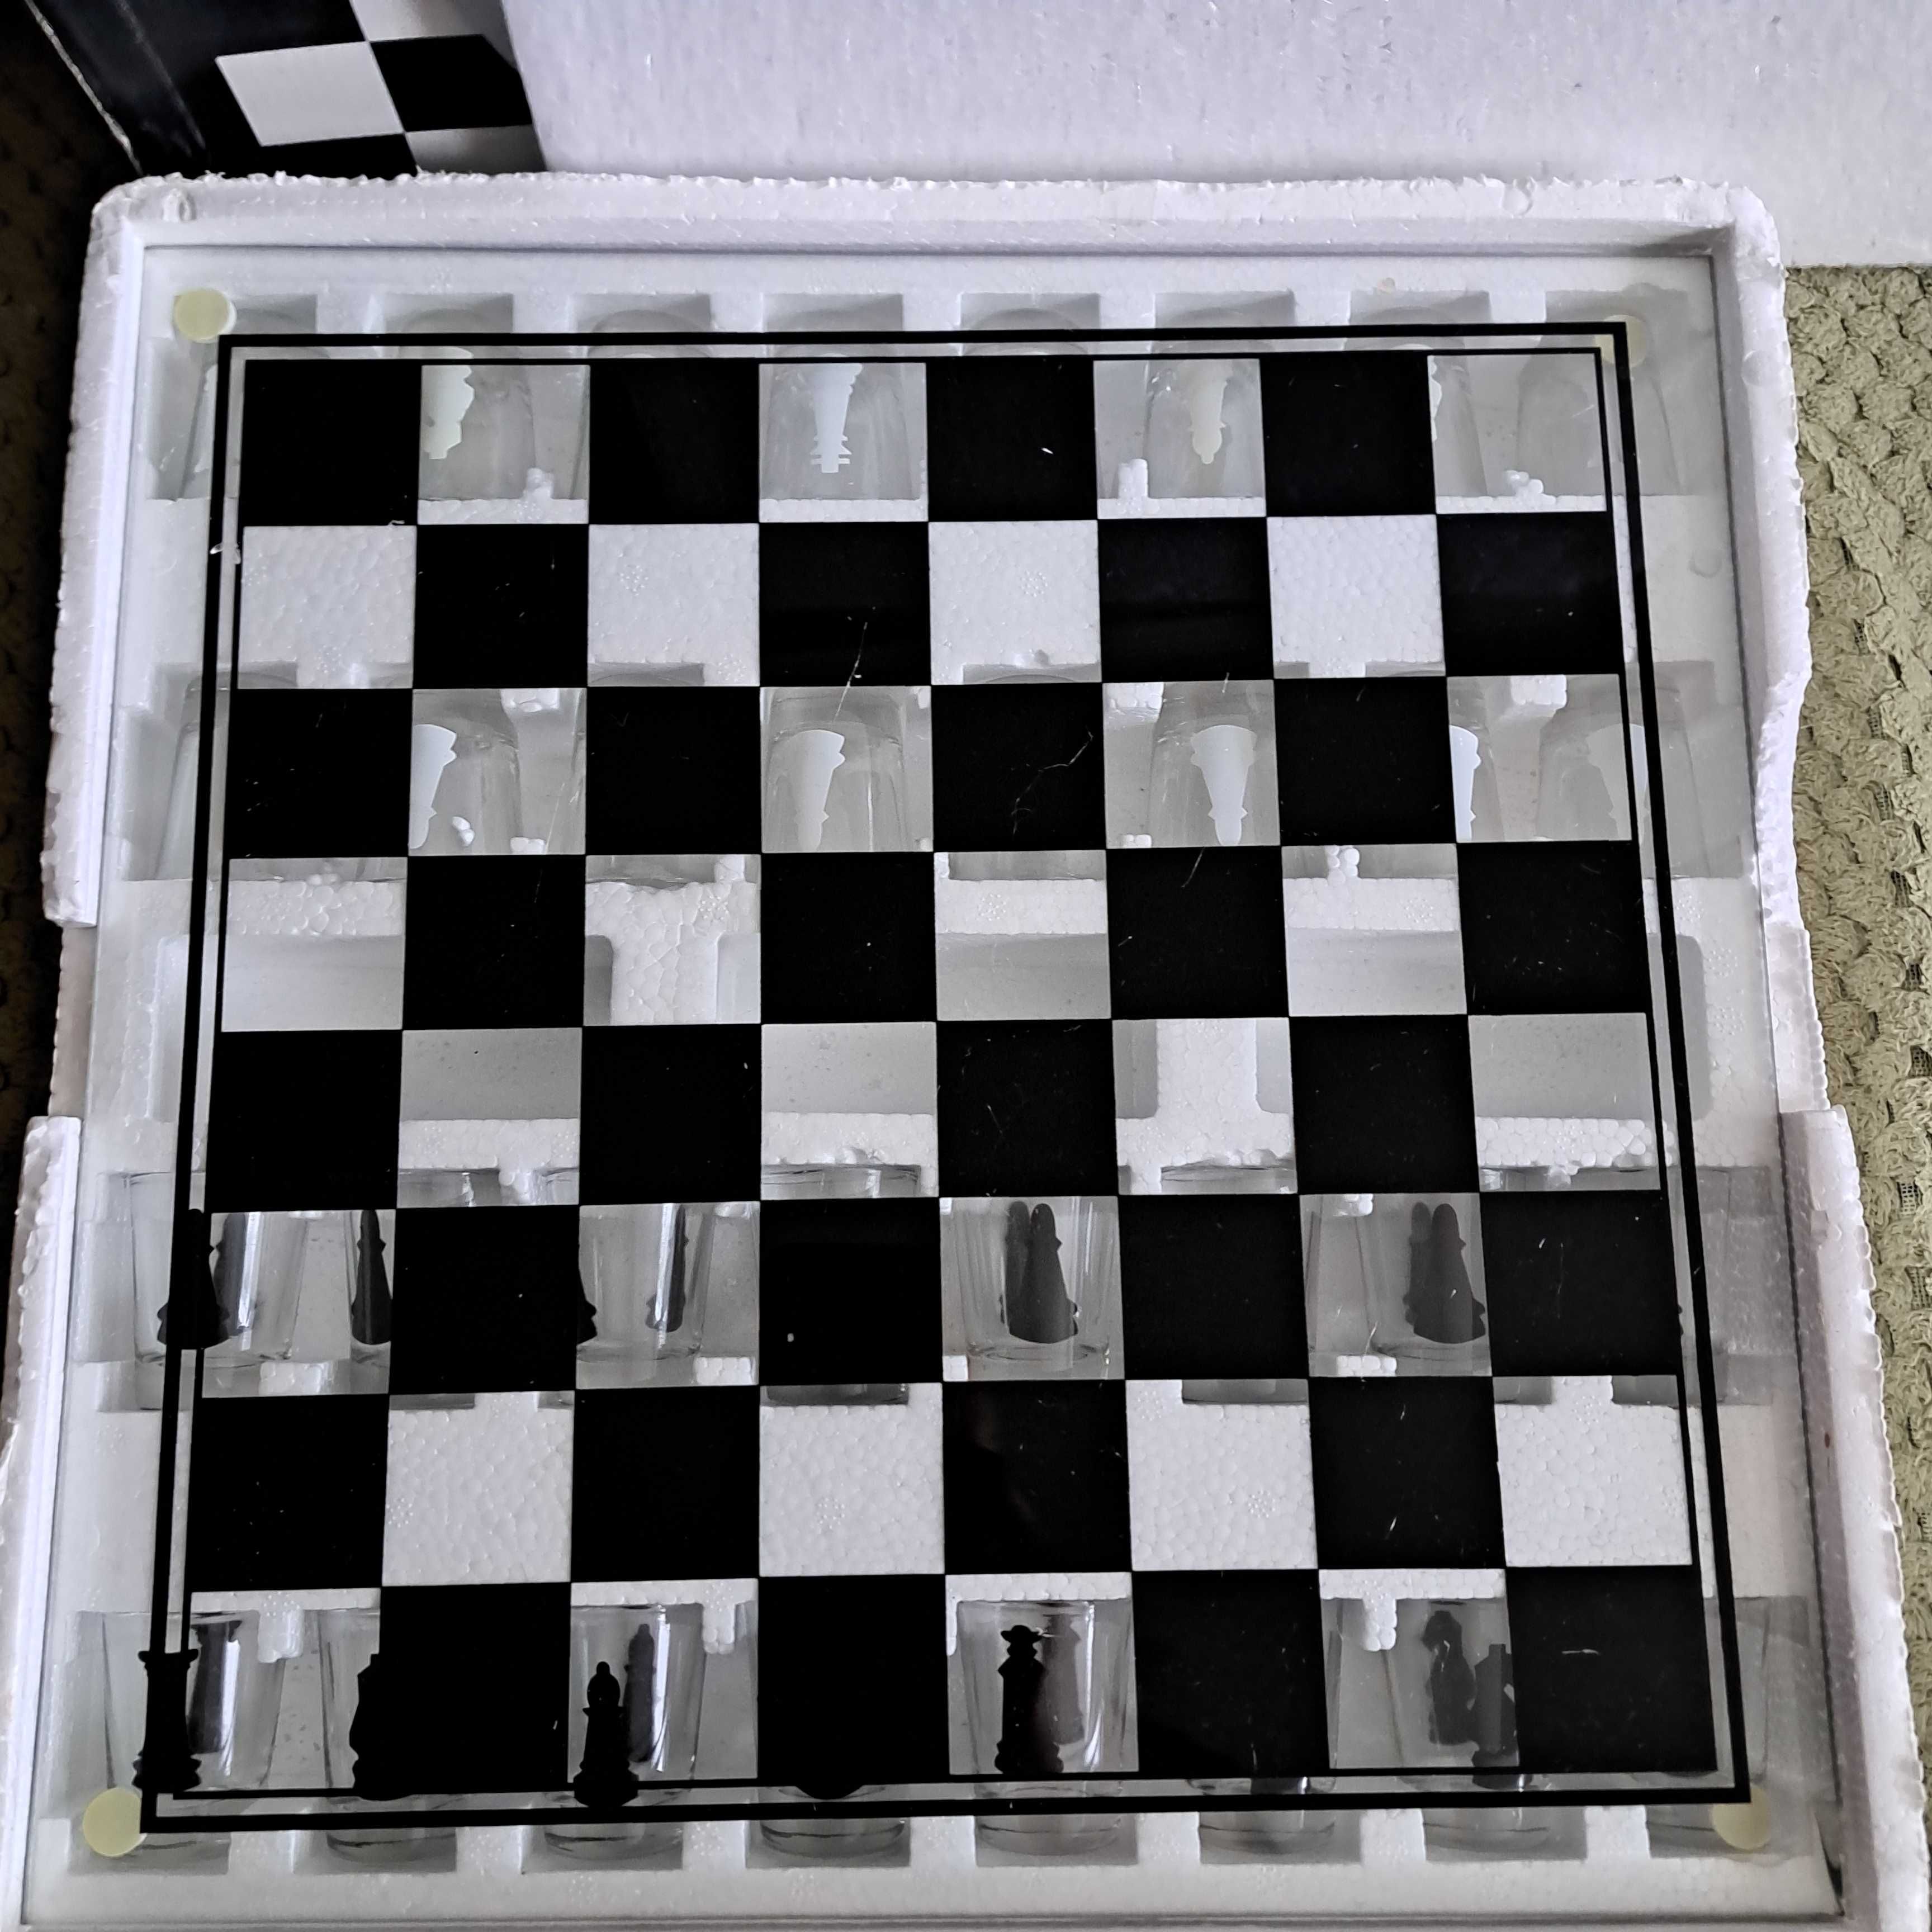 Продам гру «П'яні шахи»